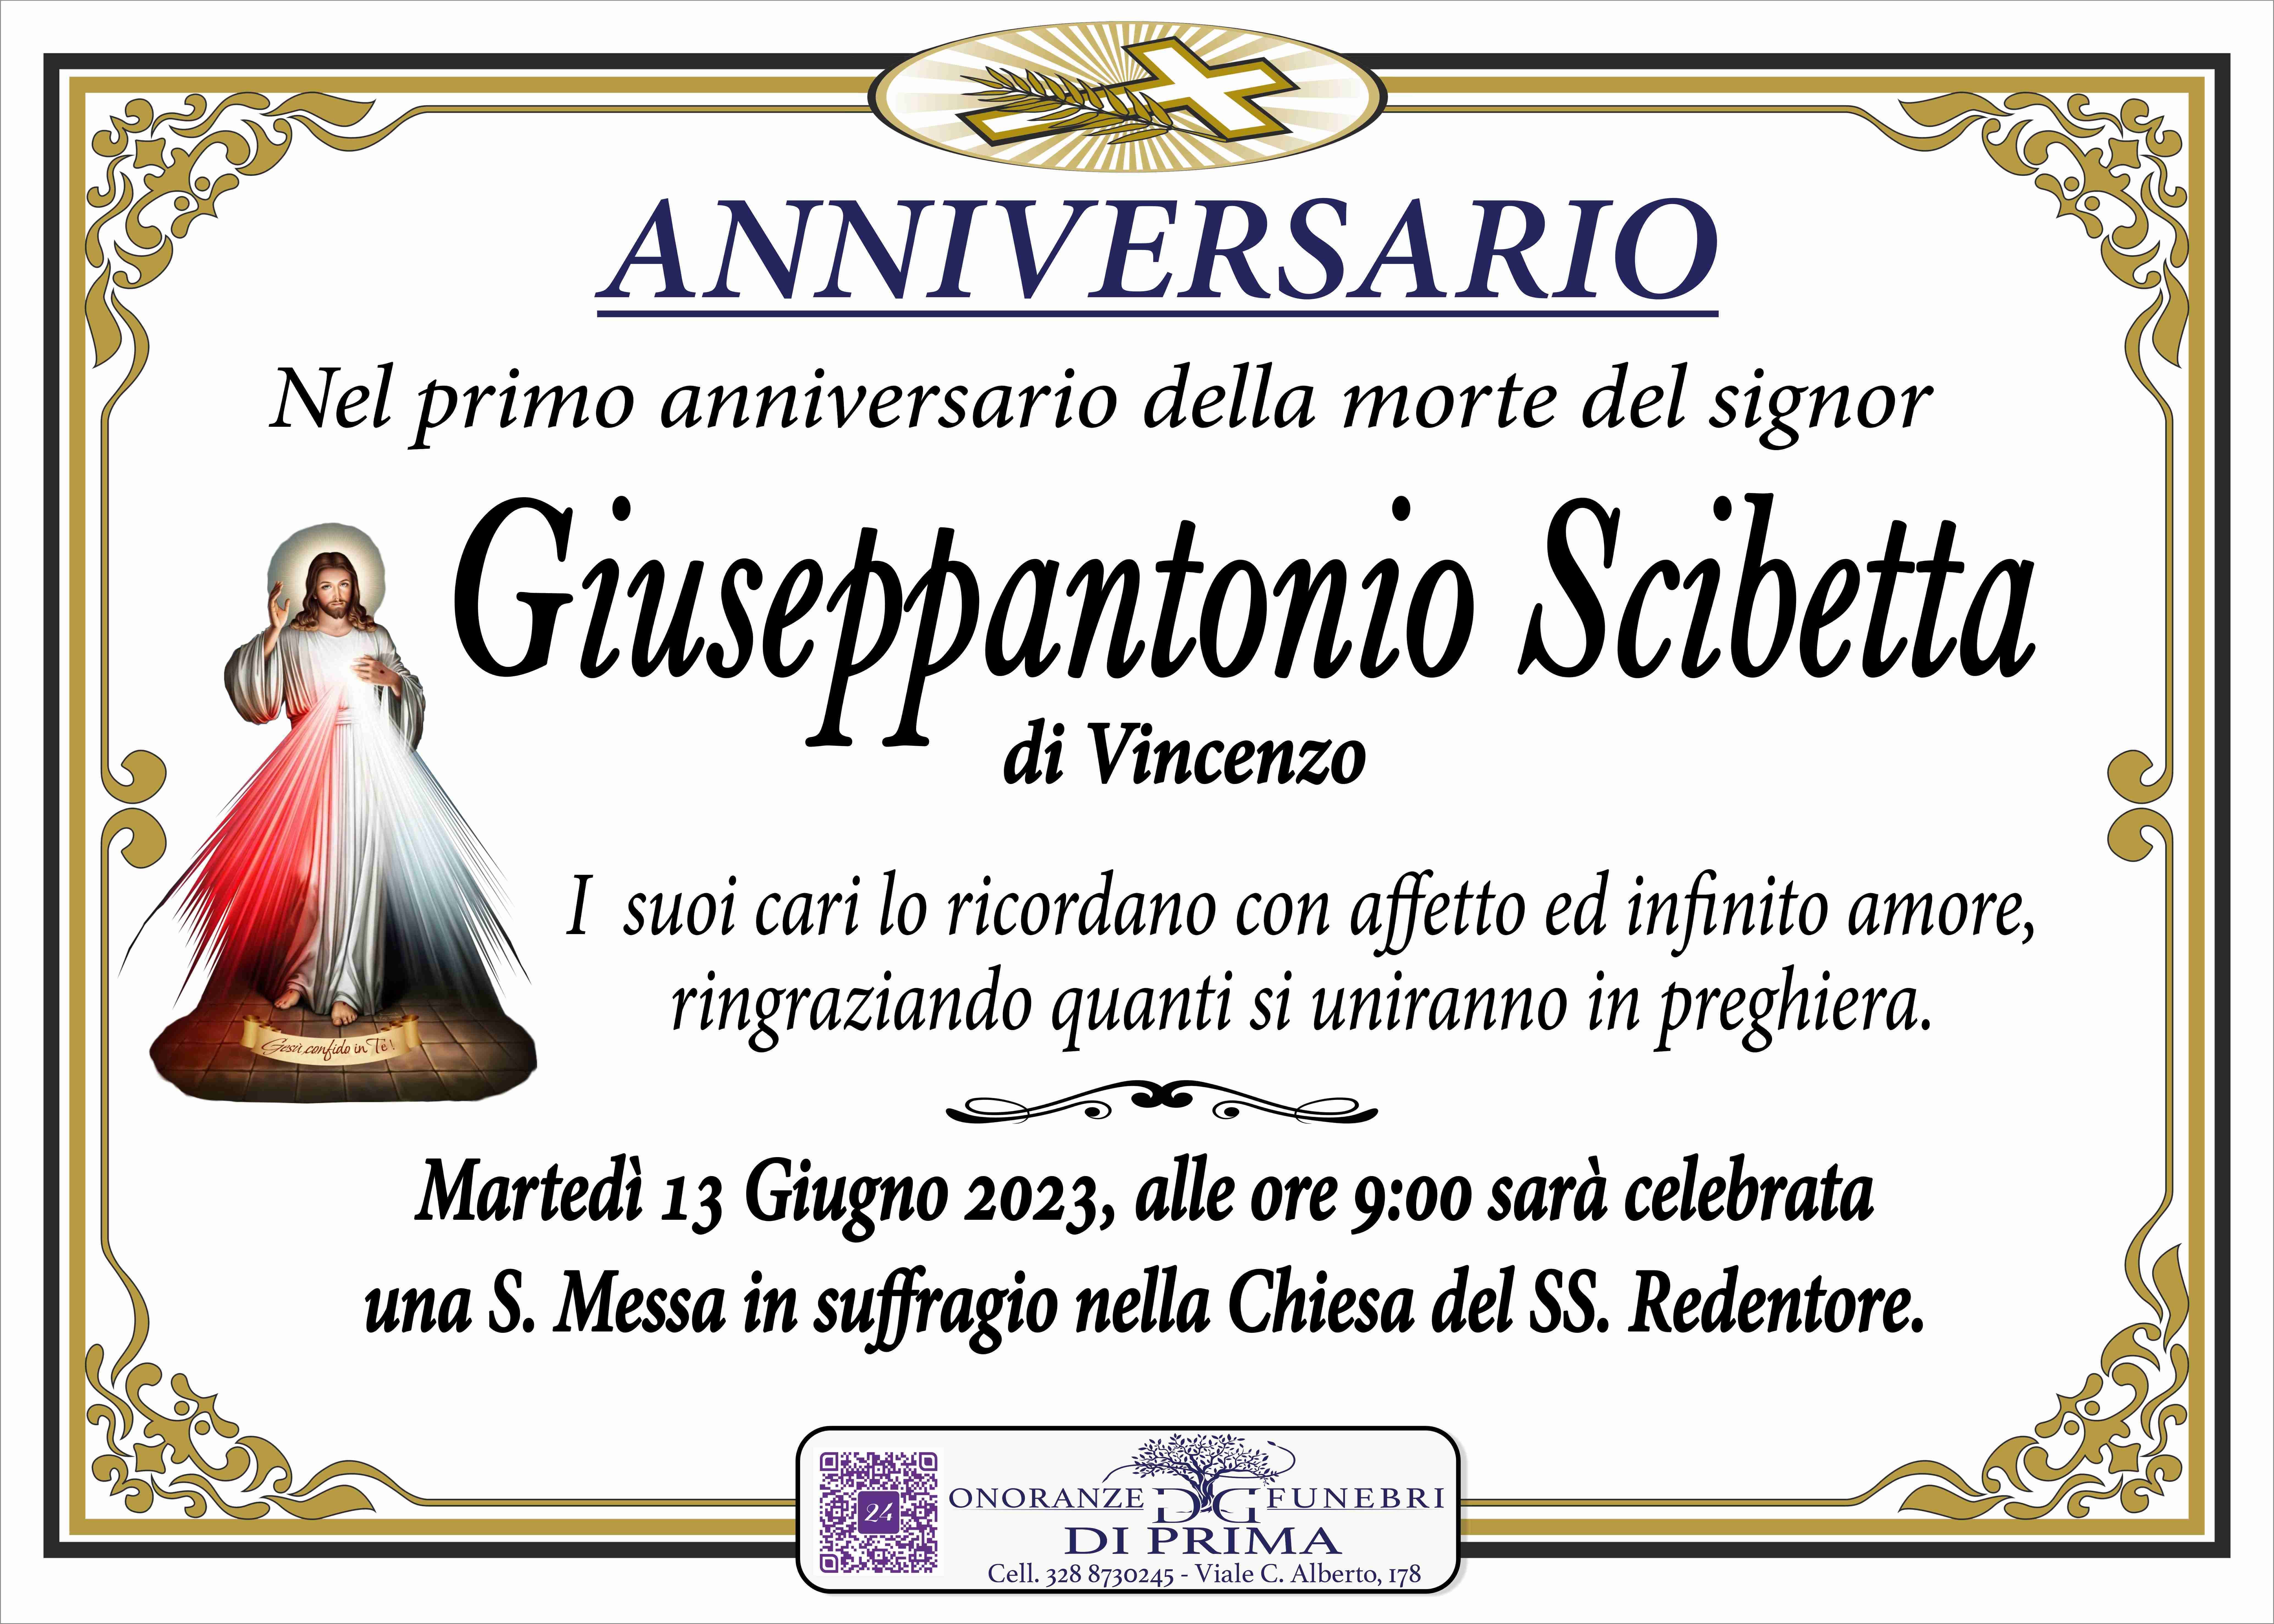 Giuseppantonio Scibetta